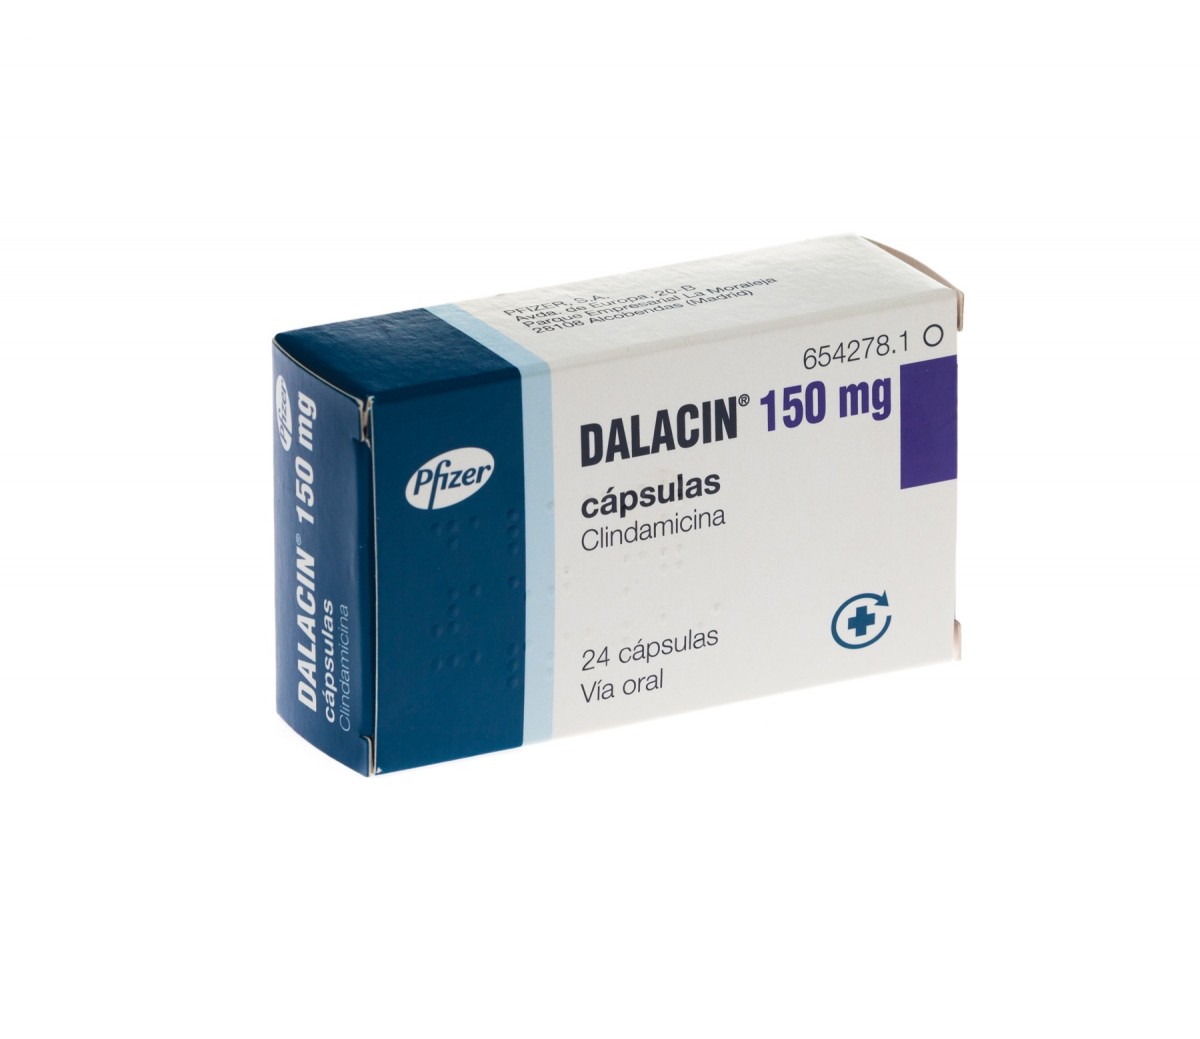 DALACIN 150 mg CAPSULAS DURAS , 500 cápsulas fotografía del envase.